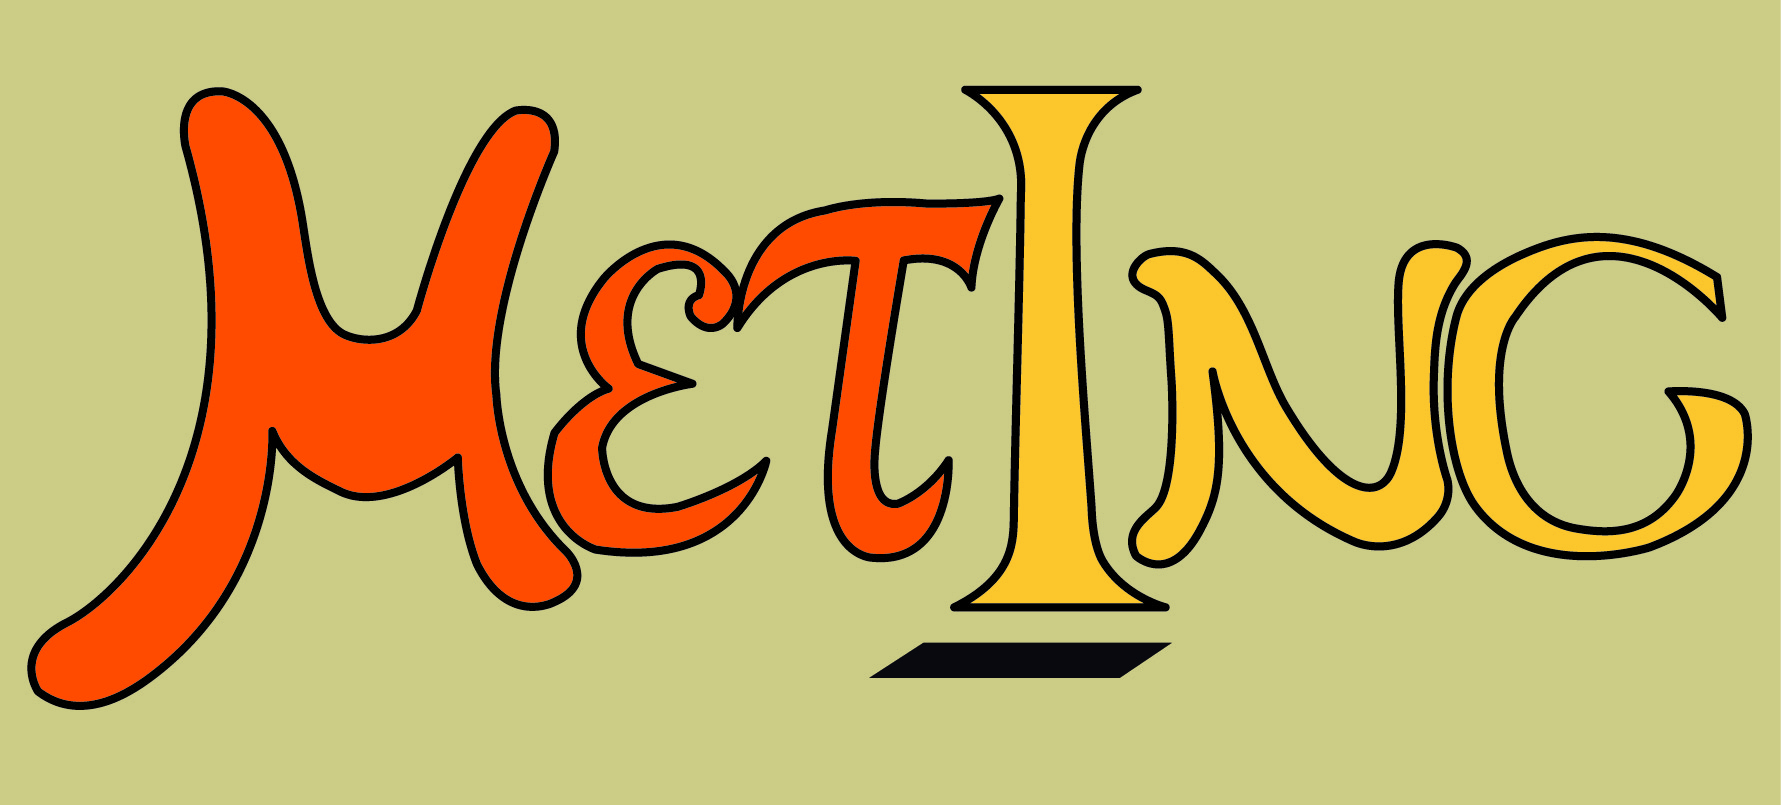 Meting logo